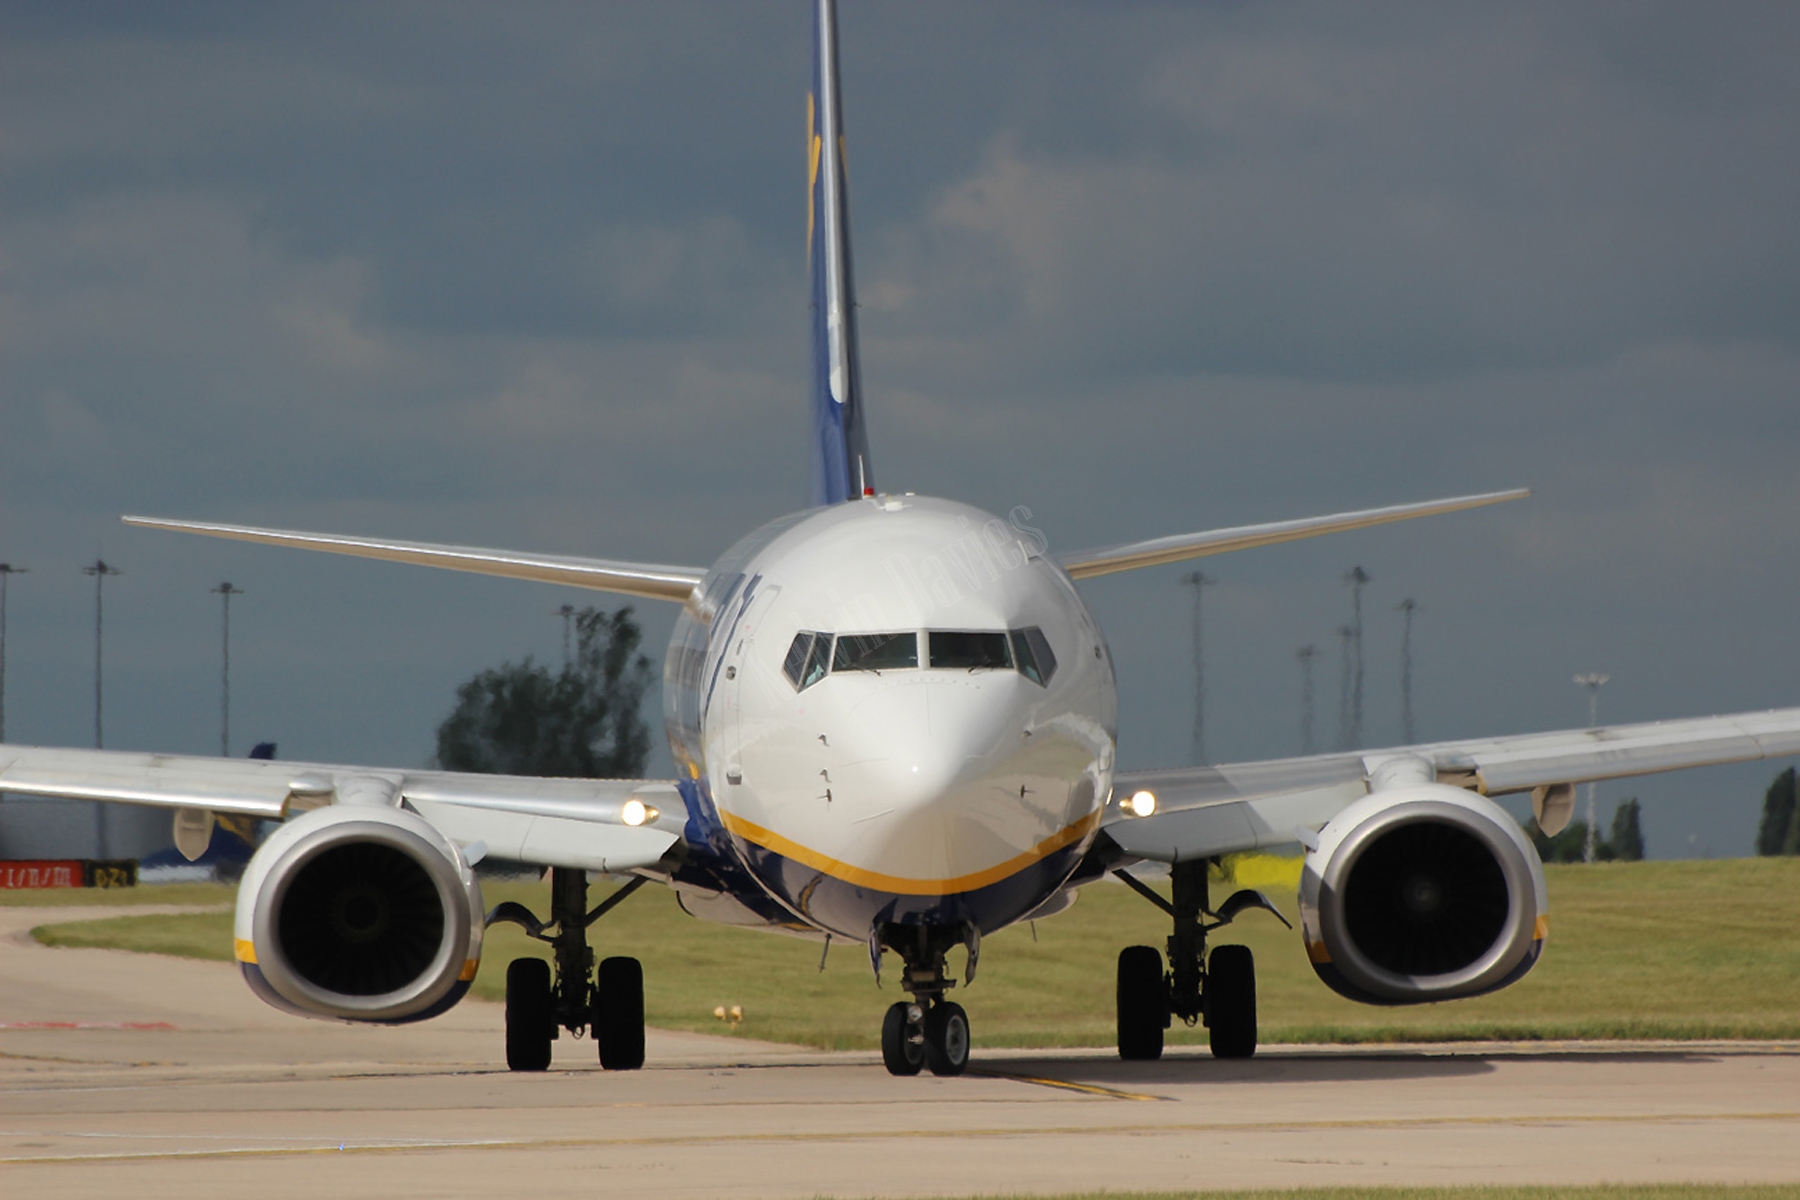 Ryanair 737 EI-DHV